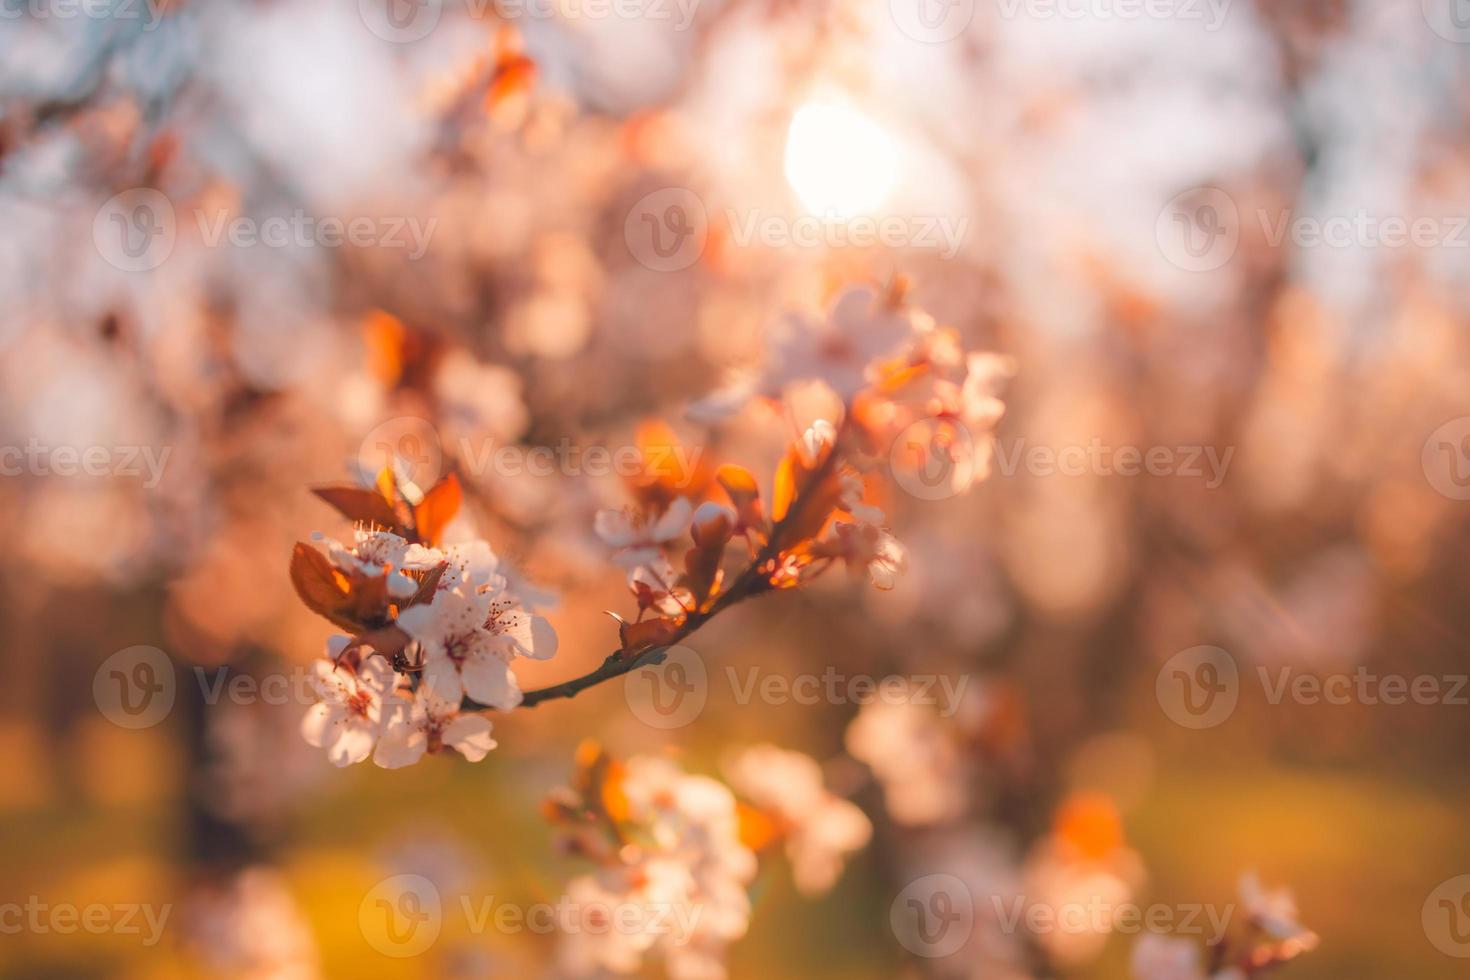 frühlingsrosa blumenhintergründe. Traumnaturnahaufnahme mit Sakura, Kirschblüte in verschwommener Bokeh-Frühlingslandschaft. friedliche Pastellfarben, romantisch blühende Blumen foto